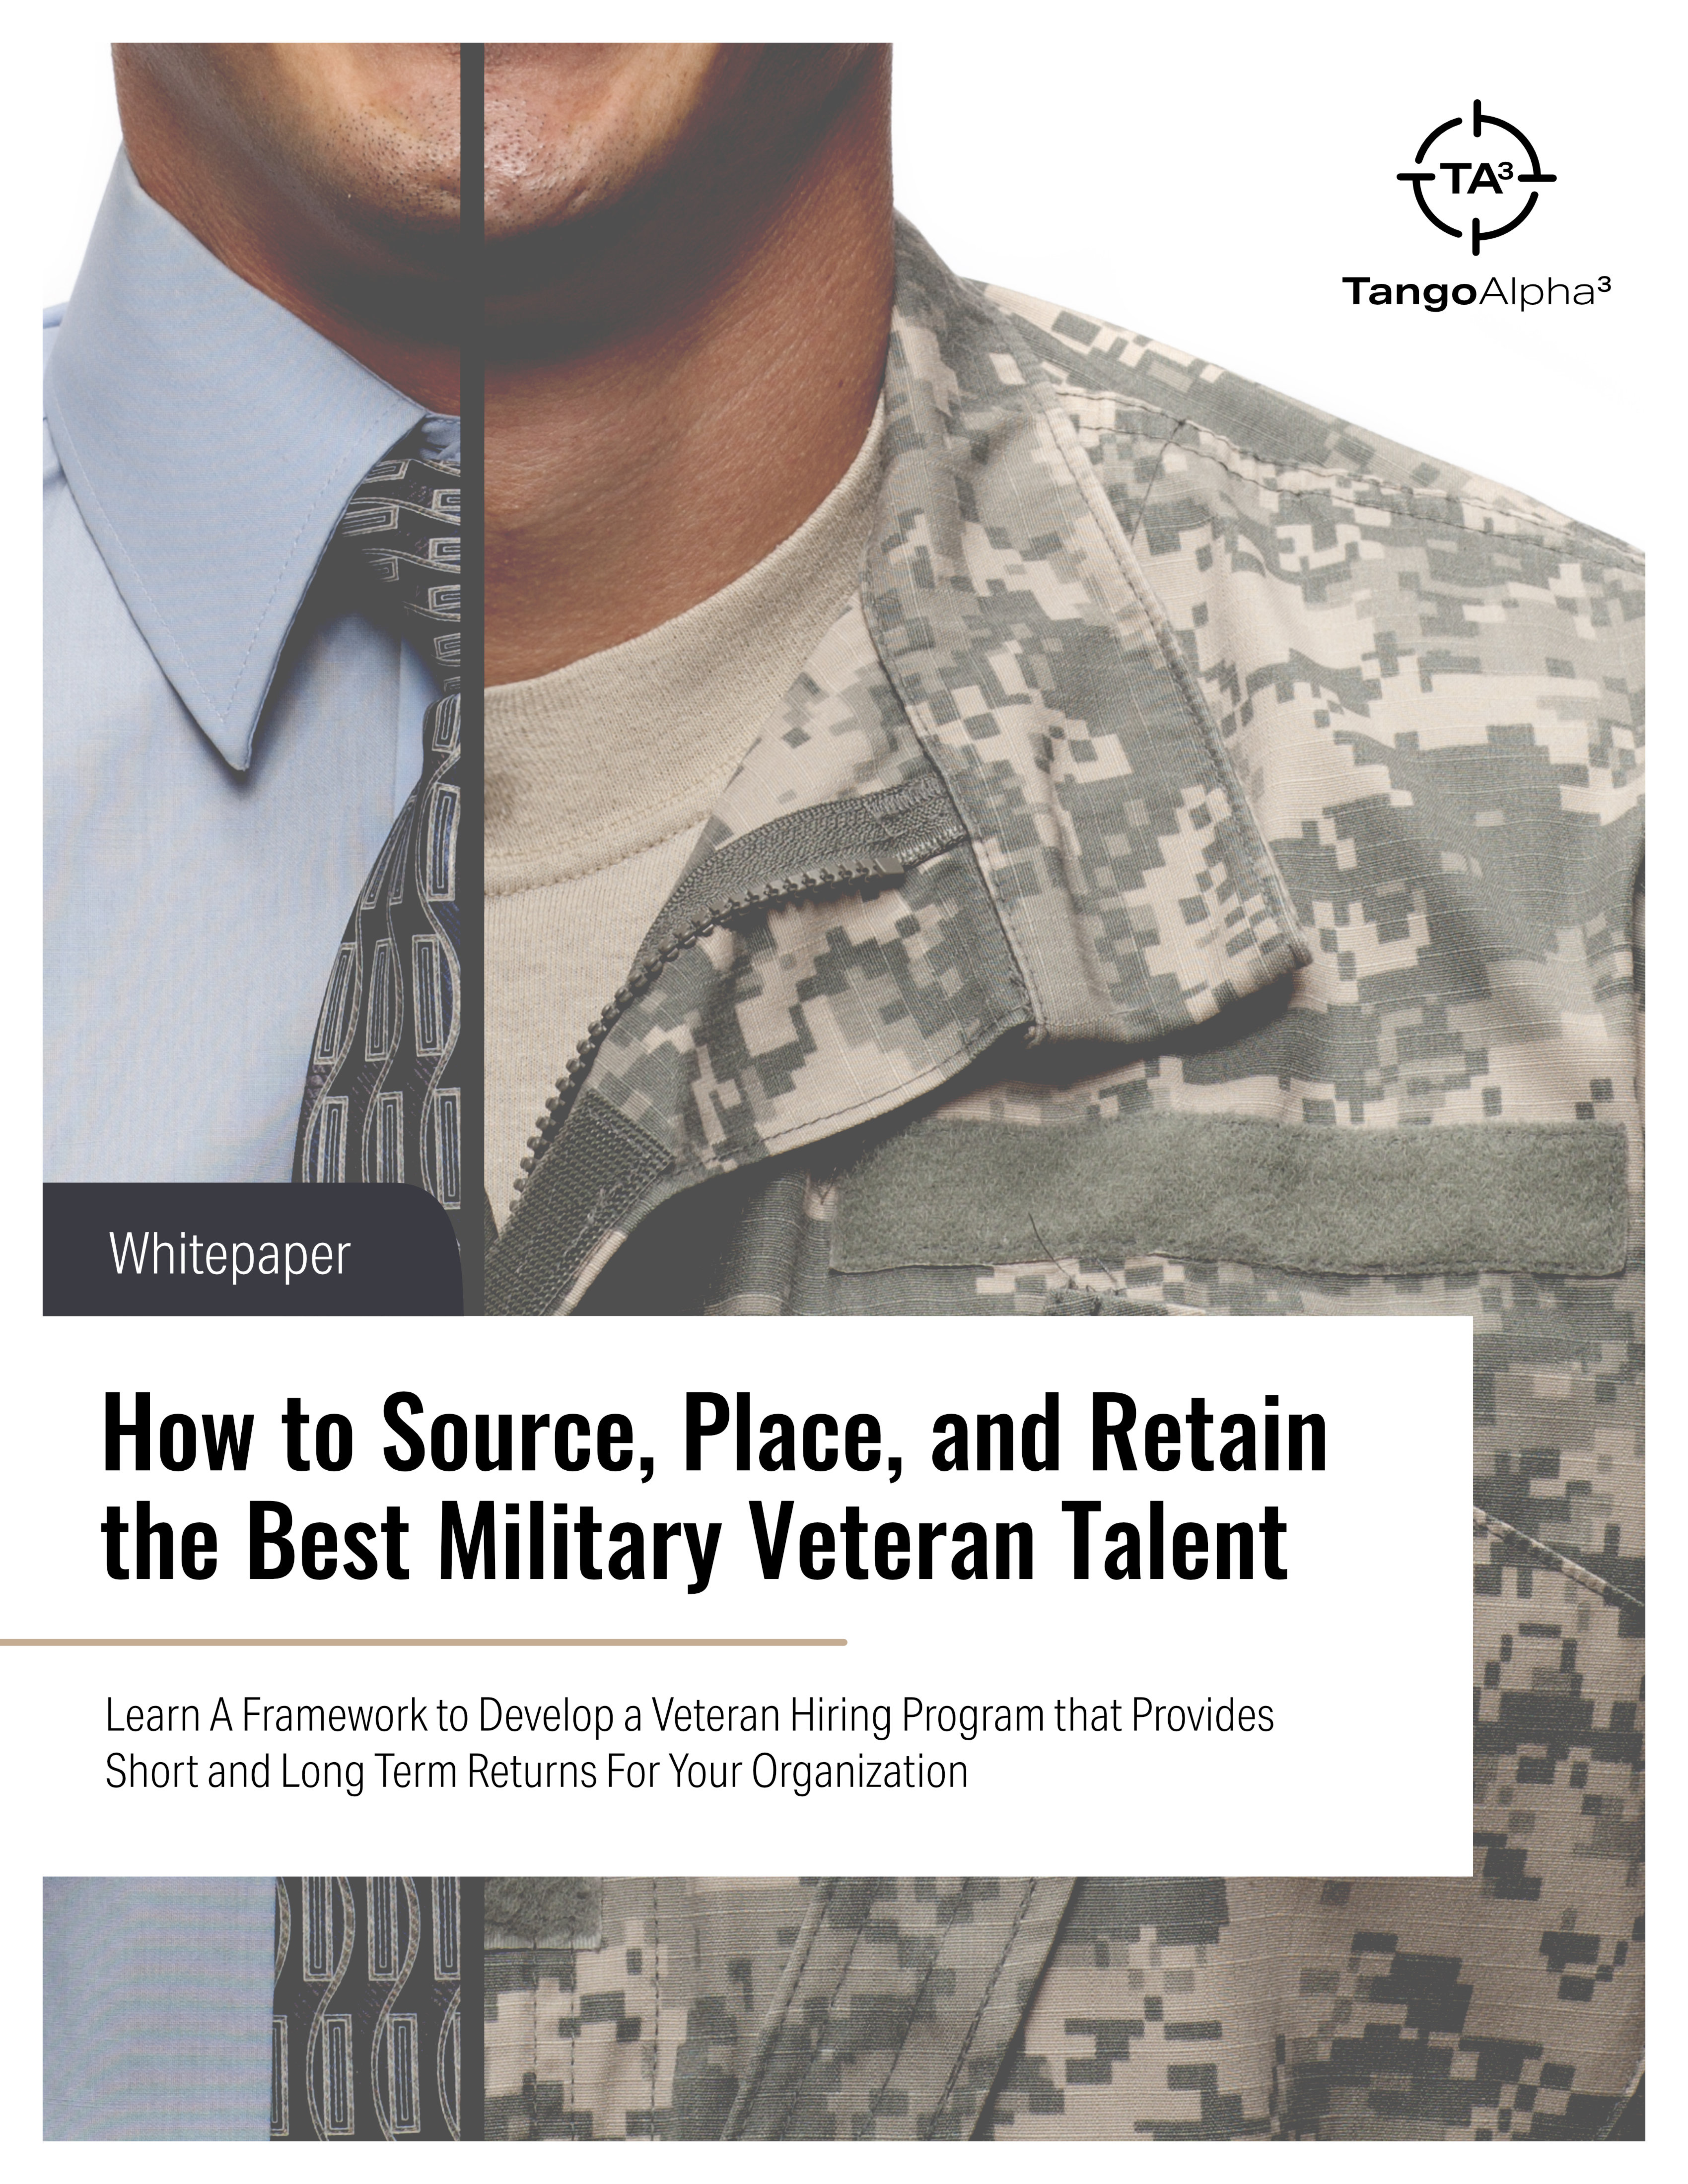 Military Hiring Program Whitepaper Cover